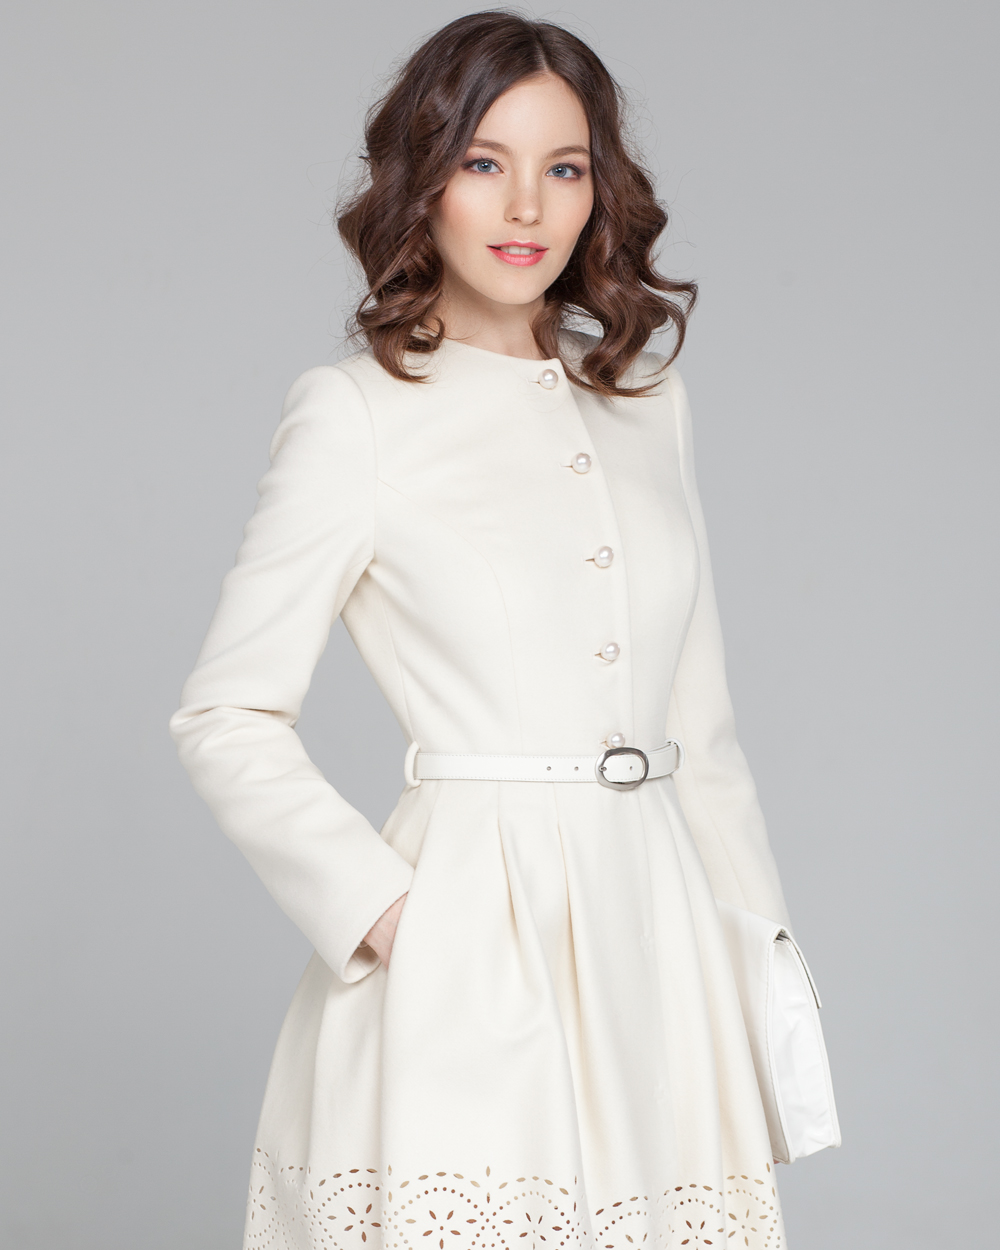 Пальто женские купить красноярск. Элегант леди пальто. Пальто приталенное женское. Белое пальто женское. Белое приталенное пальто.